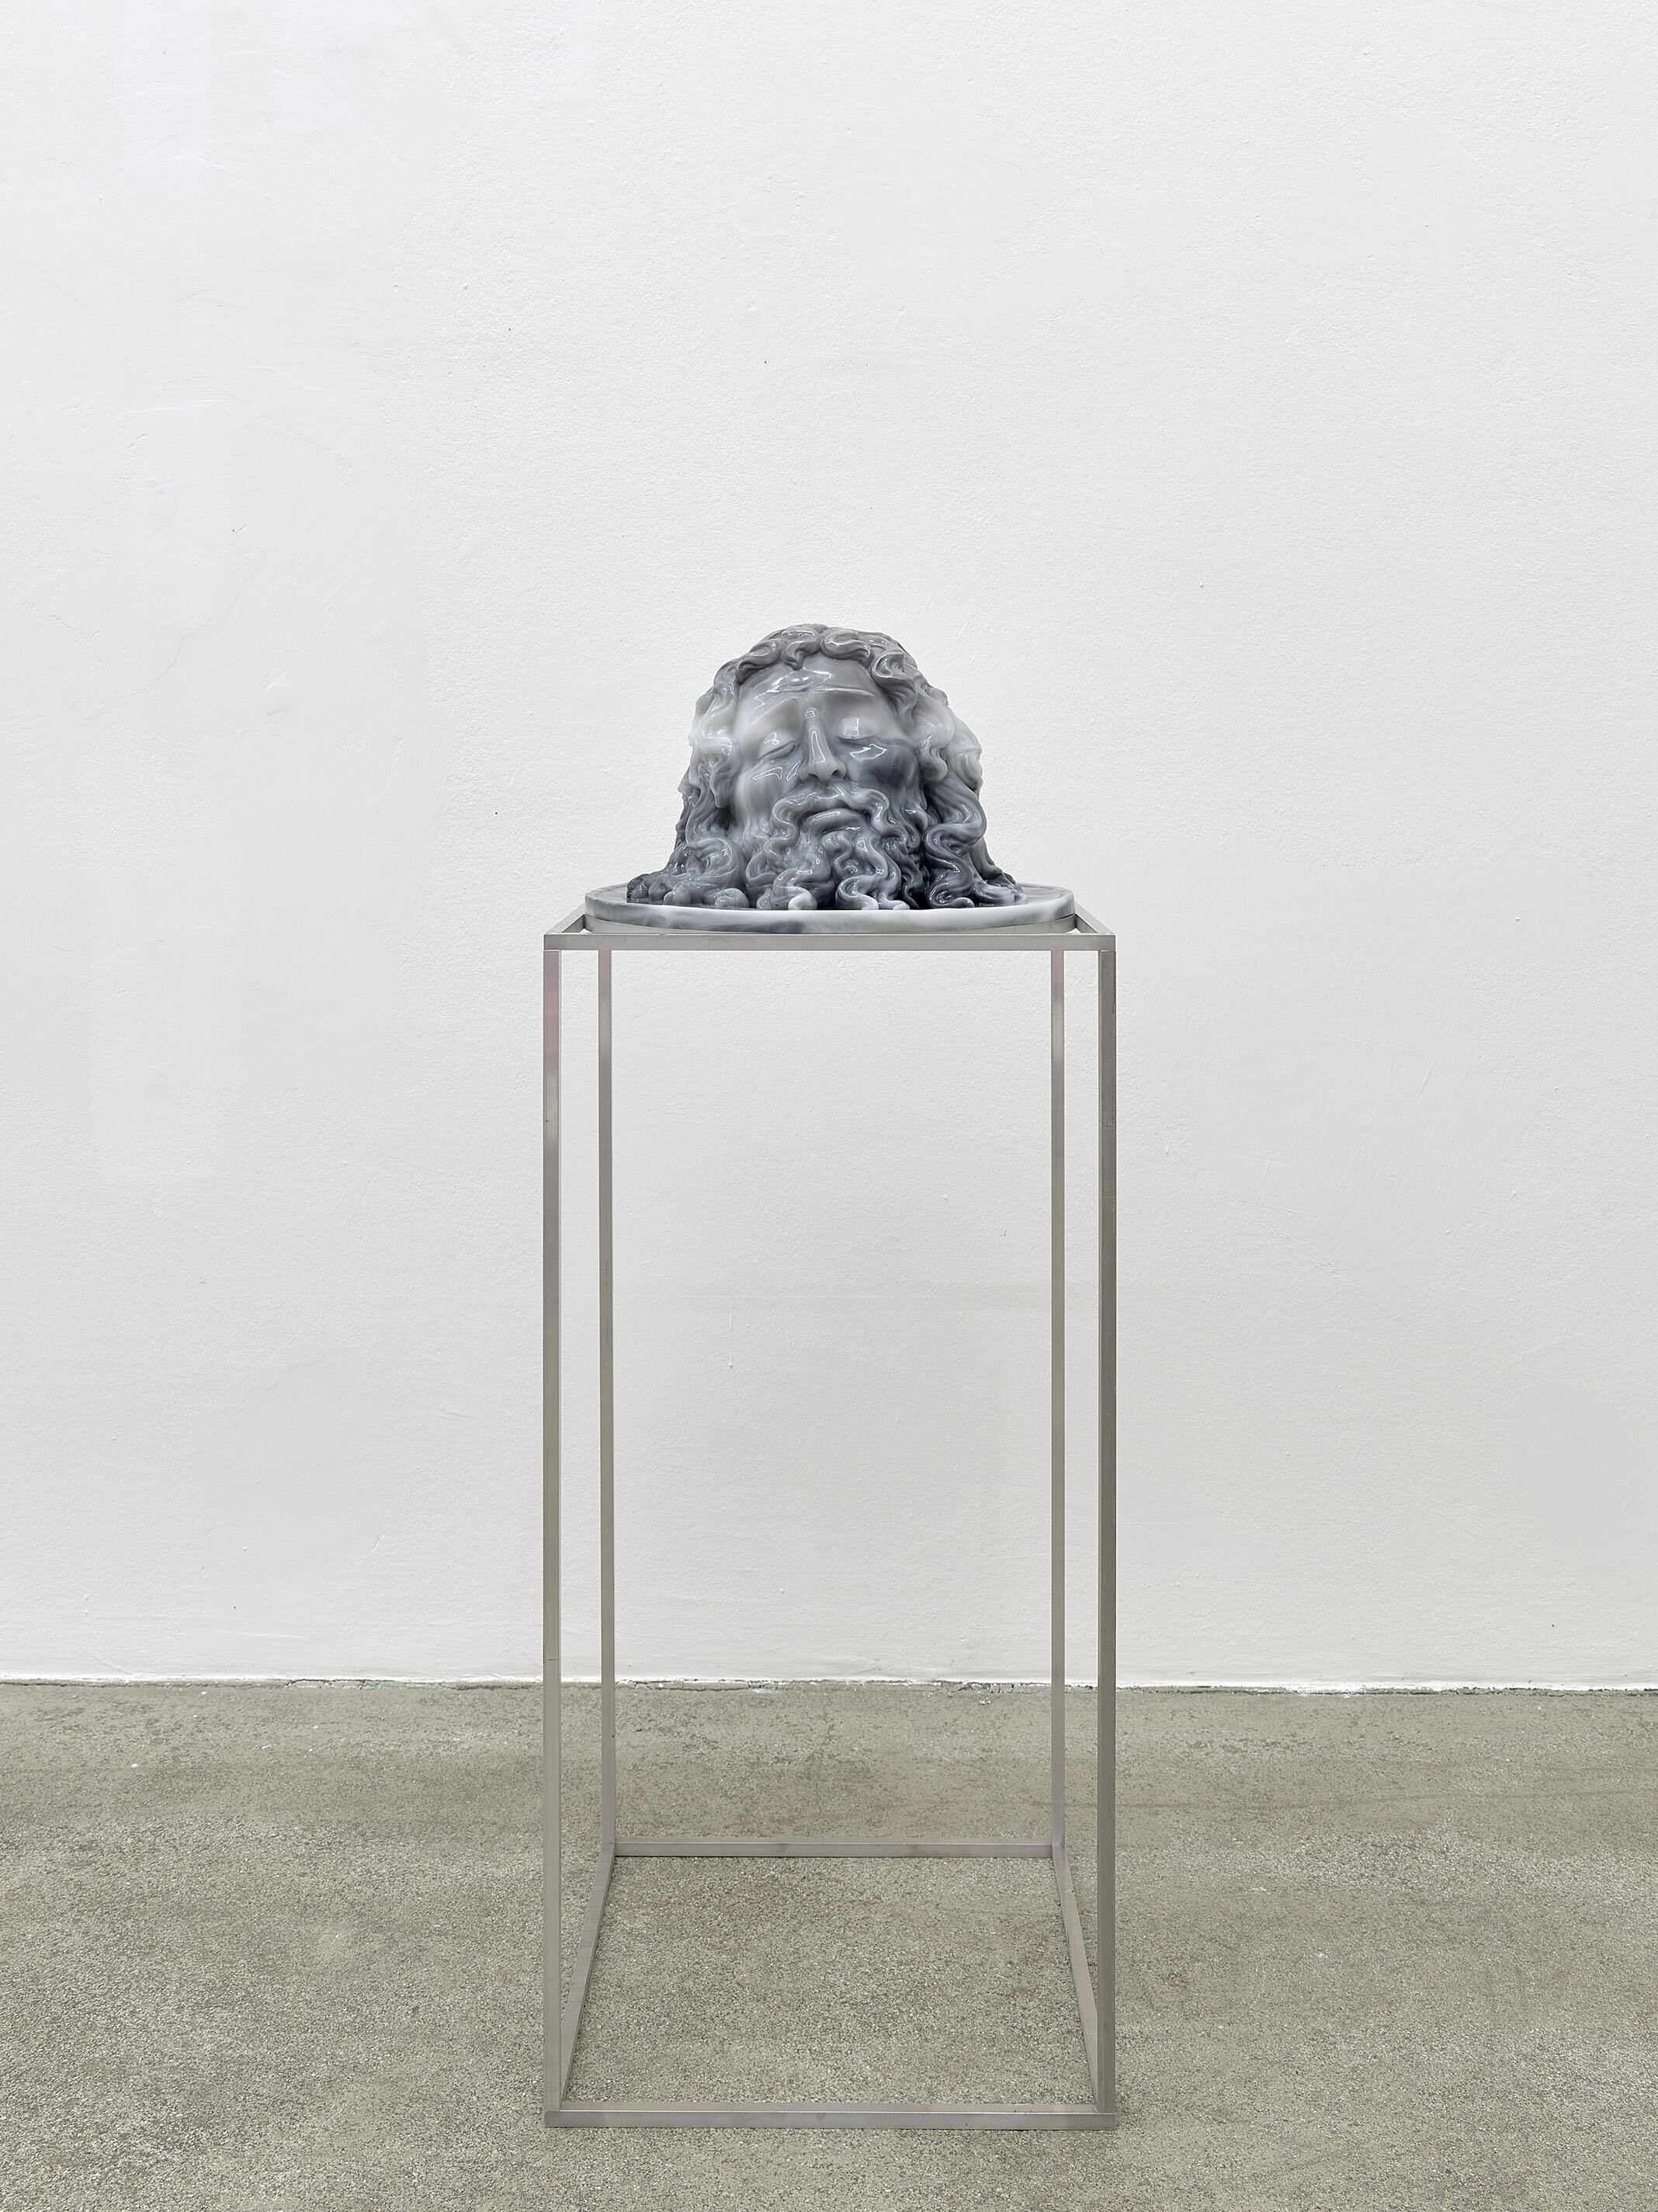 Galerie Johann Widauer-Exhibition-2020-Oliver Laric-03.jpg